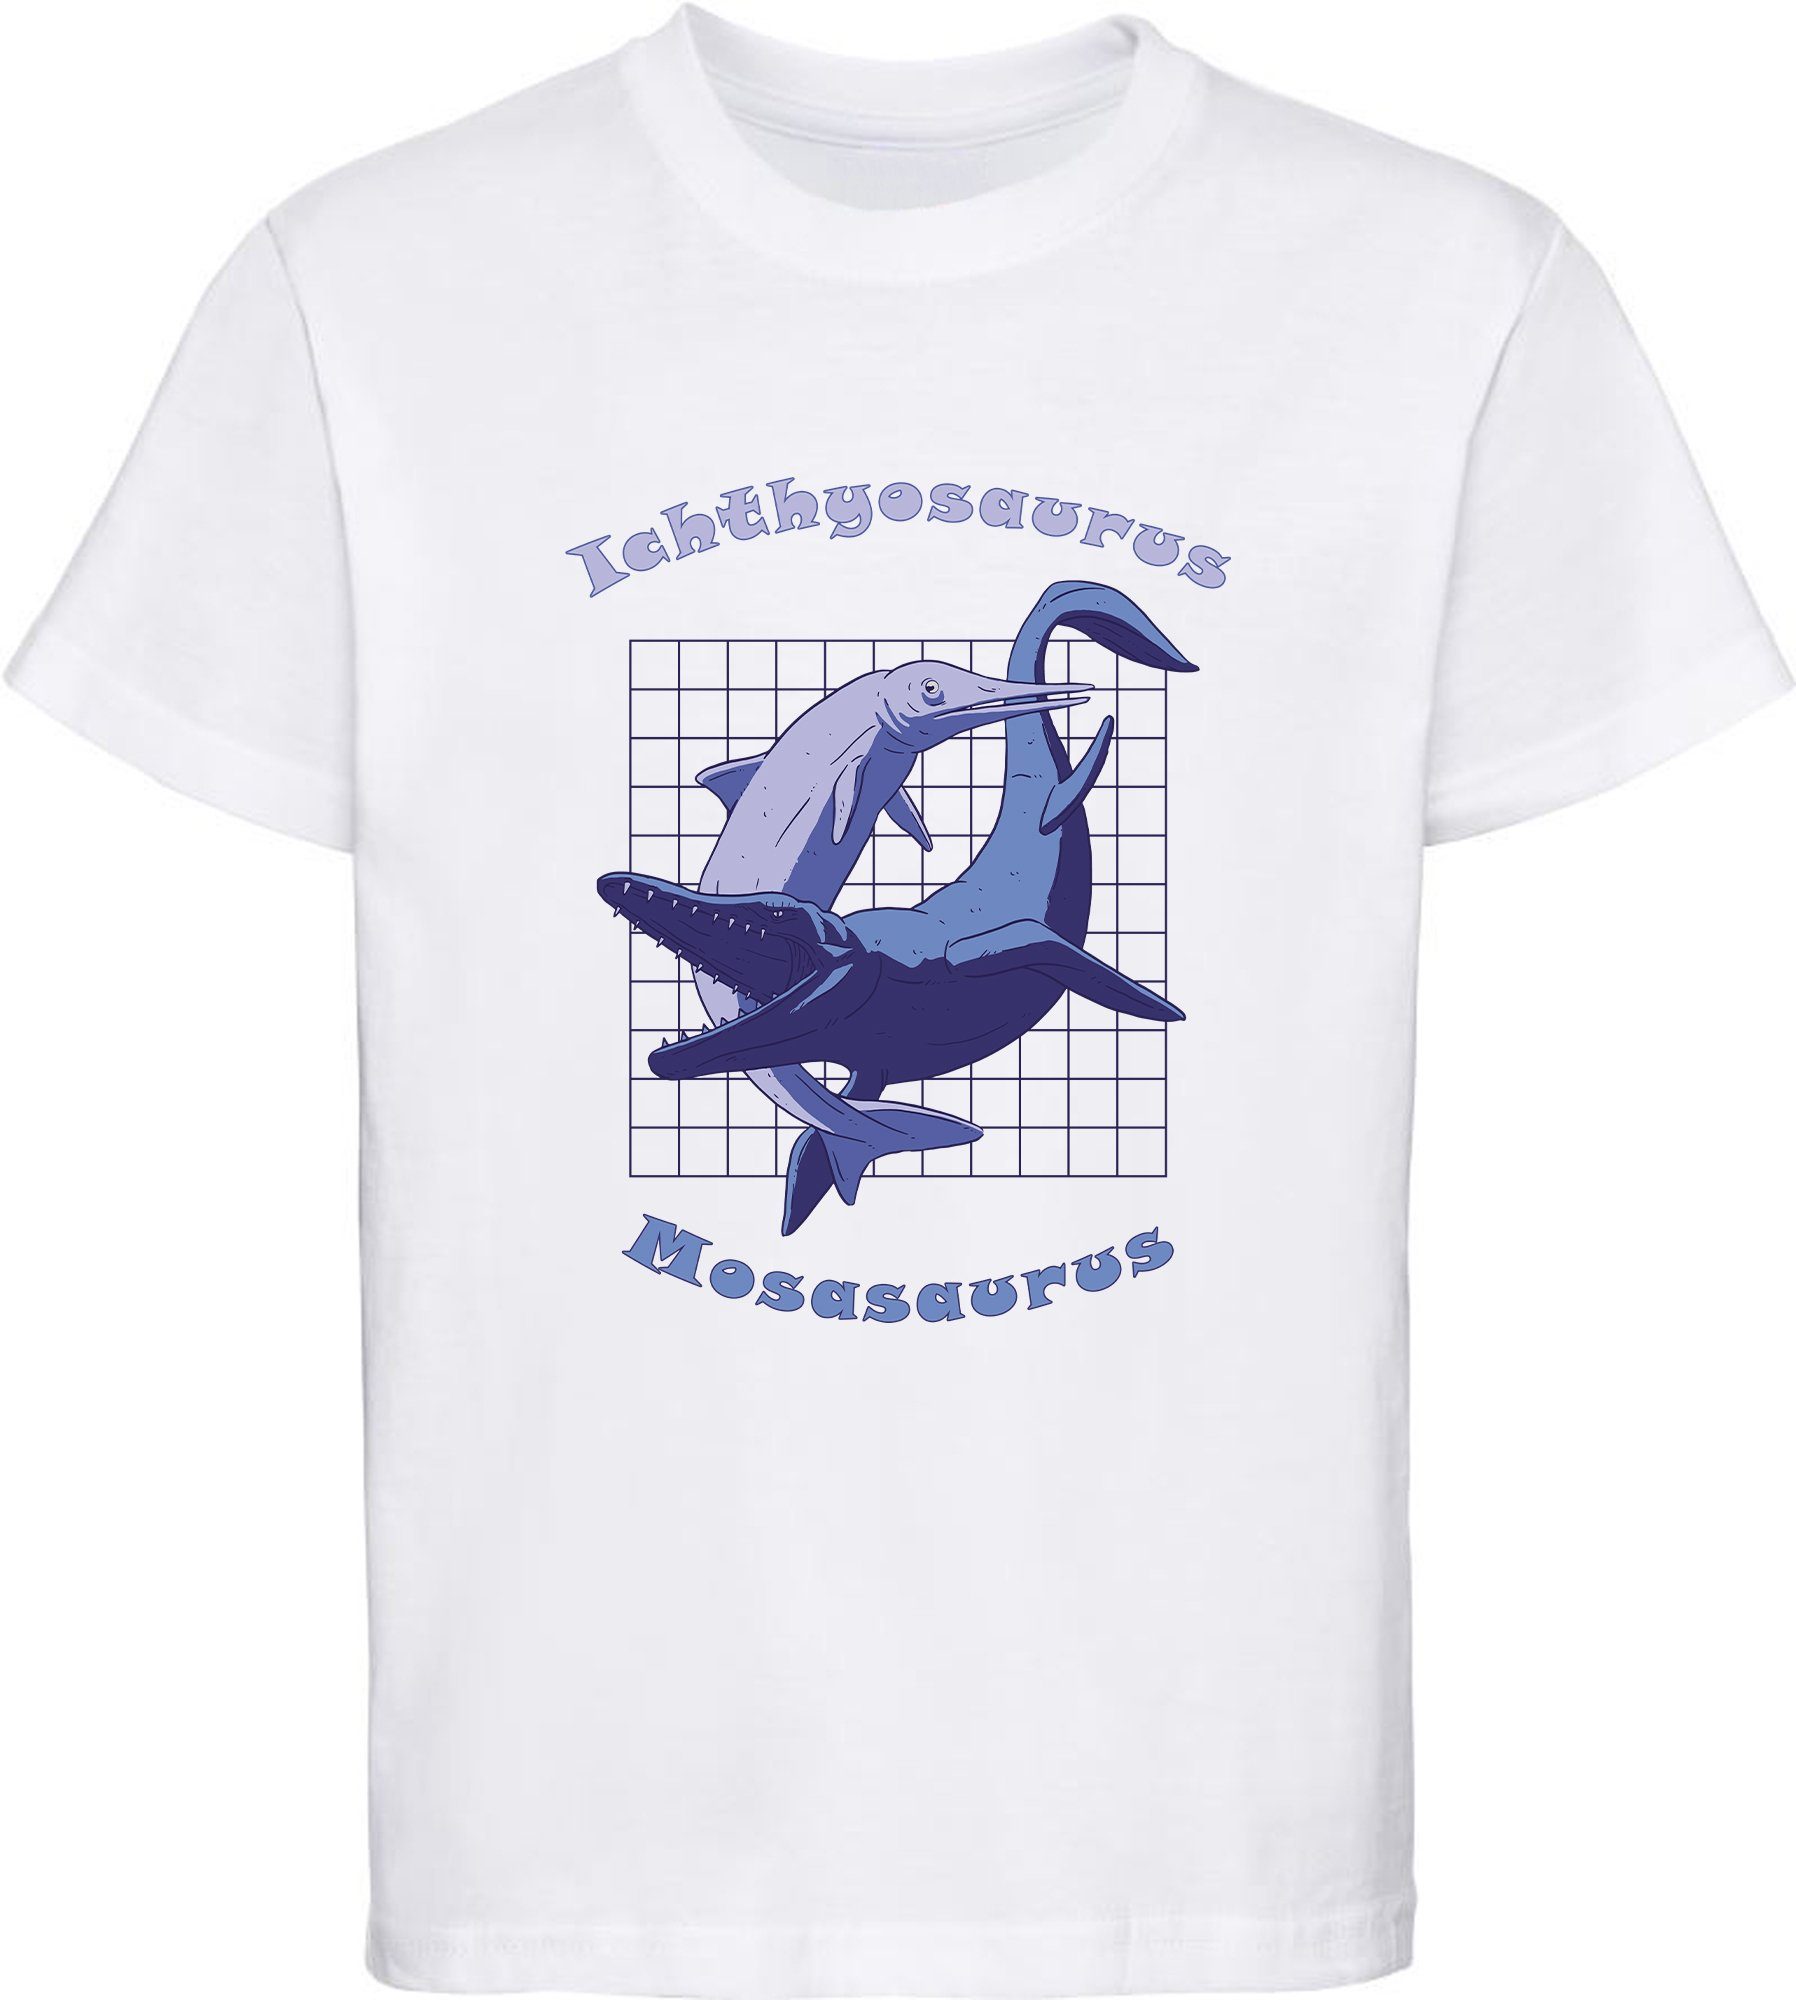 MyDesign24 Print-Shirt bedrucktes Kinder T-Shirt mit Ichthyosaurus und Mosasaurus Baumwollshirt mit Dino, schwarz, weiß, rot, blau, i89 weiss